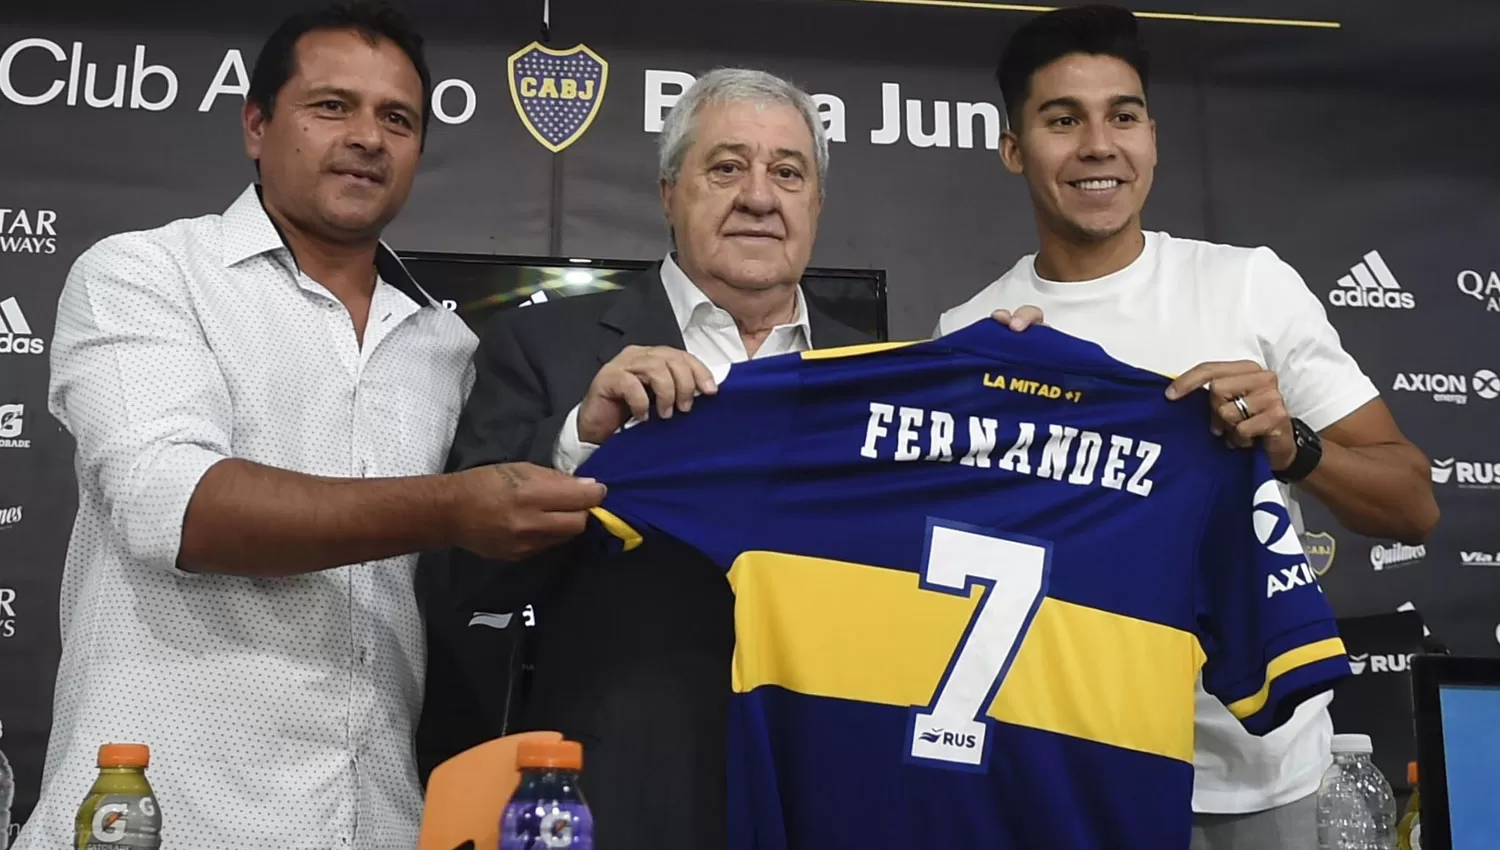 ES OFICIAL. El santafesino posó junto al presidente del club, Jorge Amor Ameal, y al secretario de fútbol, Marcelo Delgado.